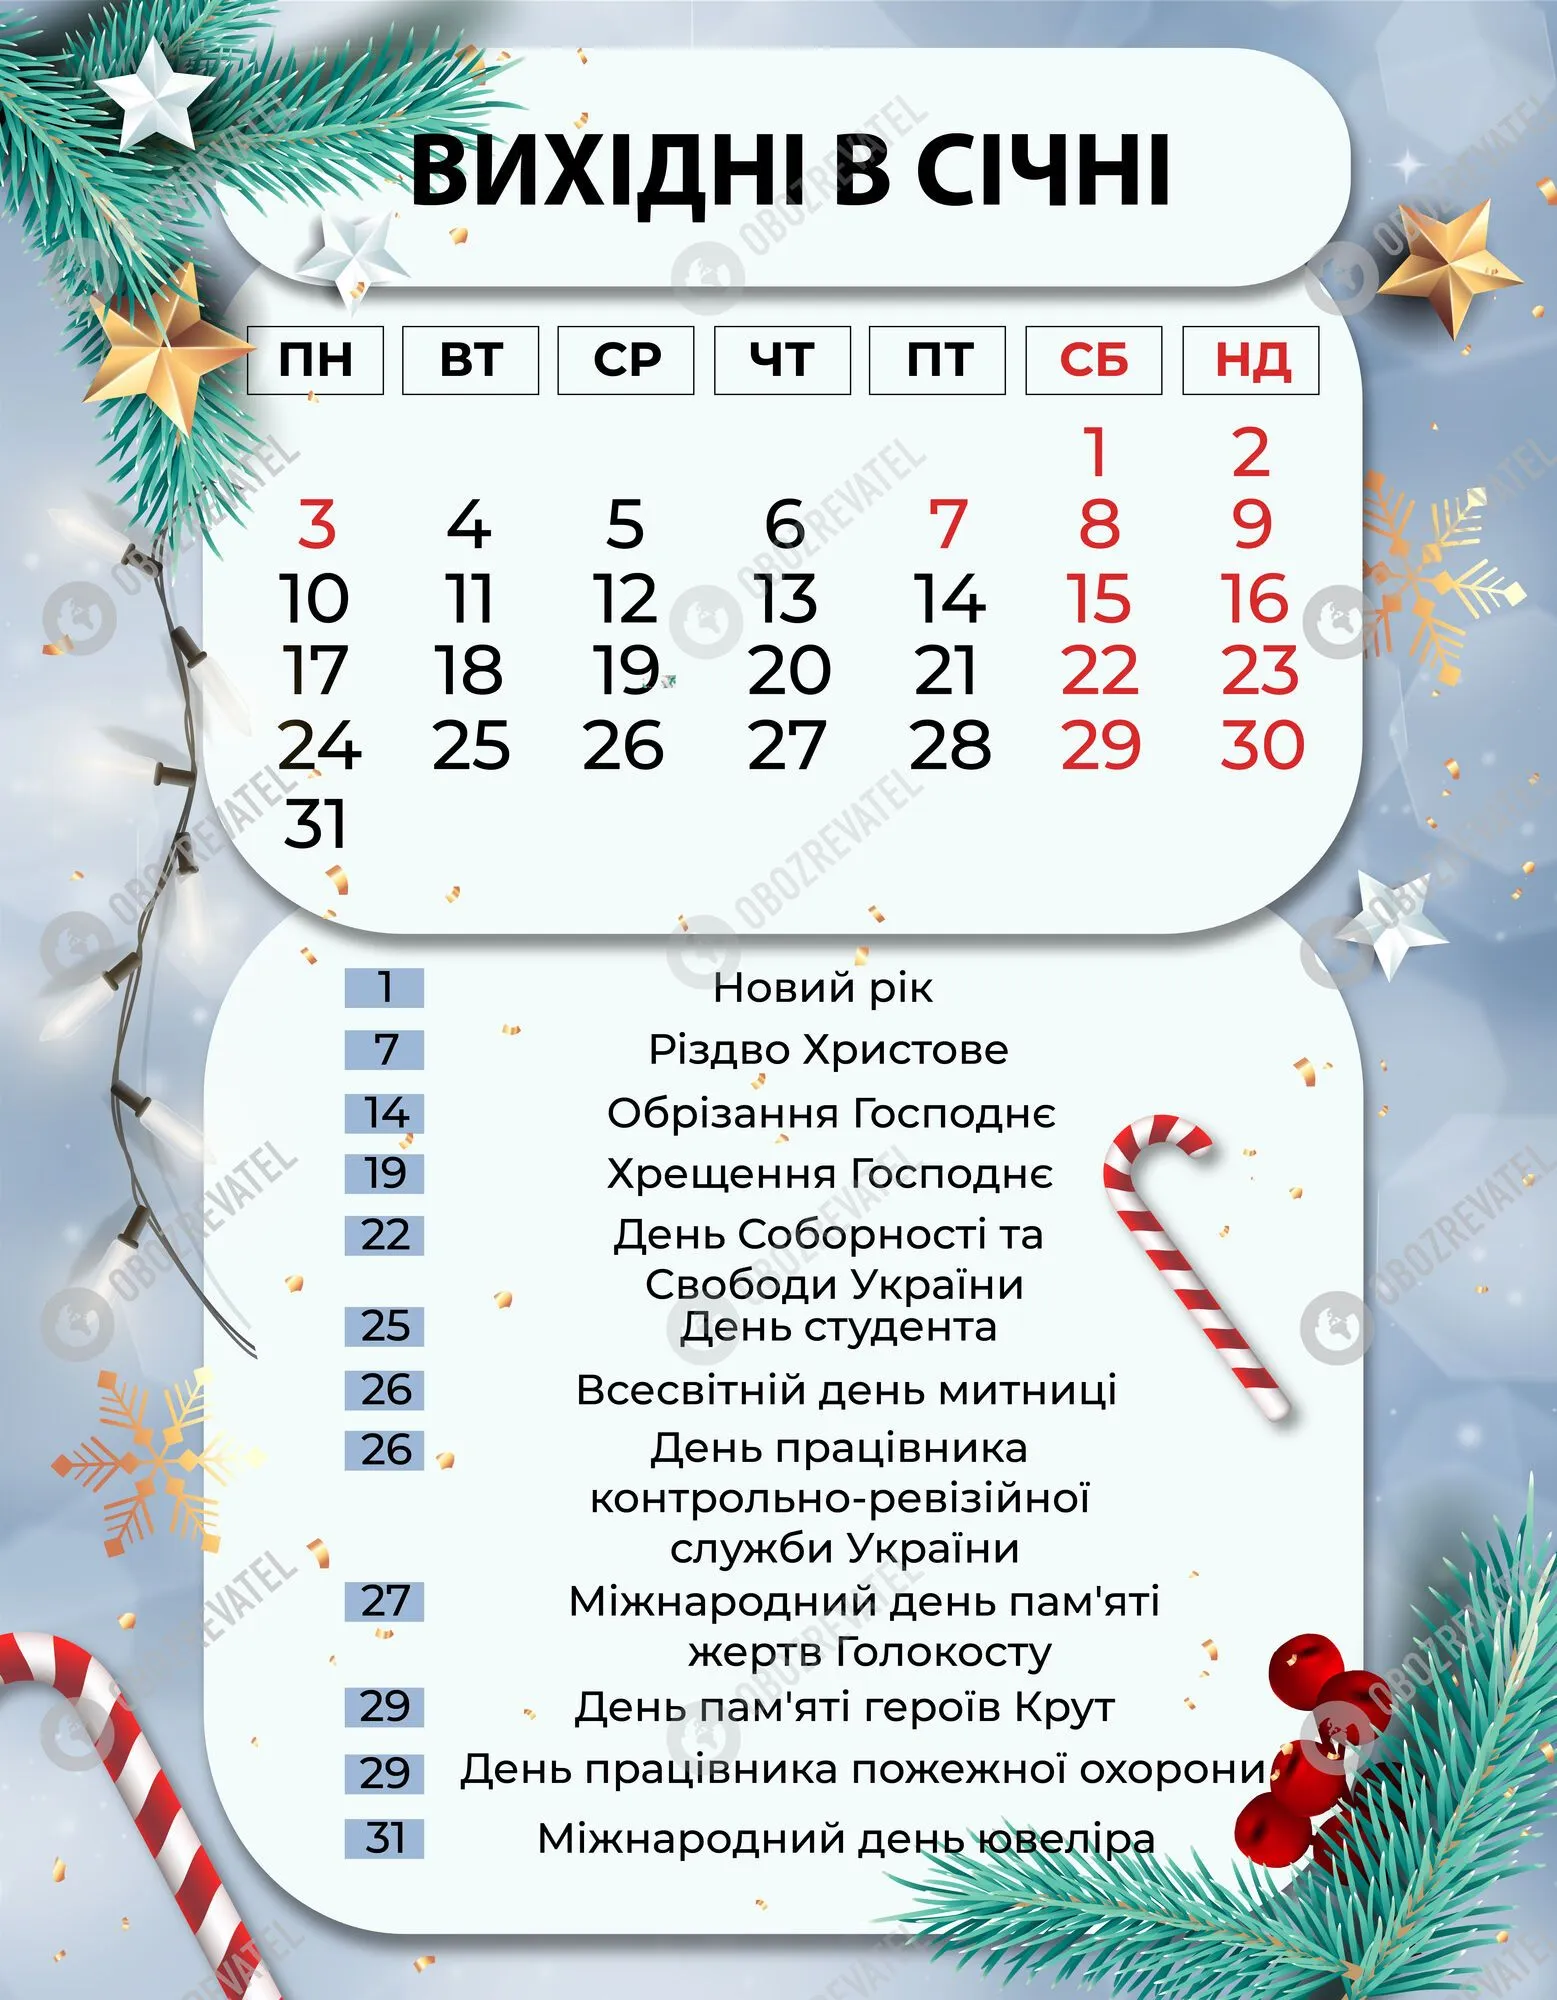 У січні 2022 року в Україні буде 12 офіційних вихідних